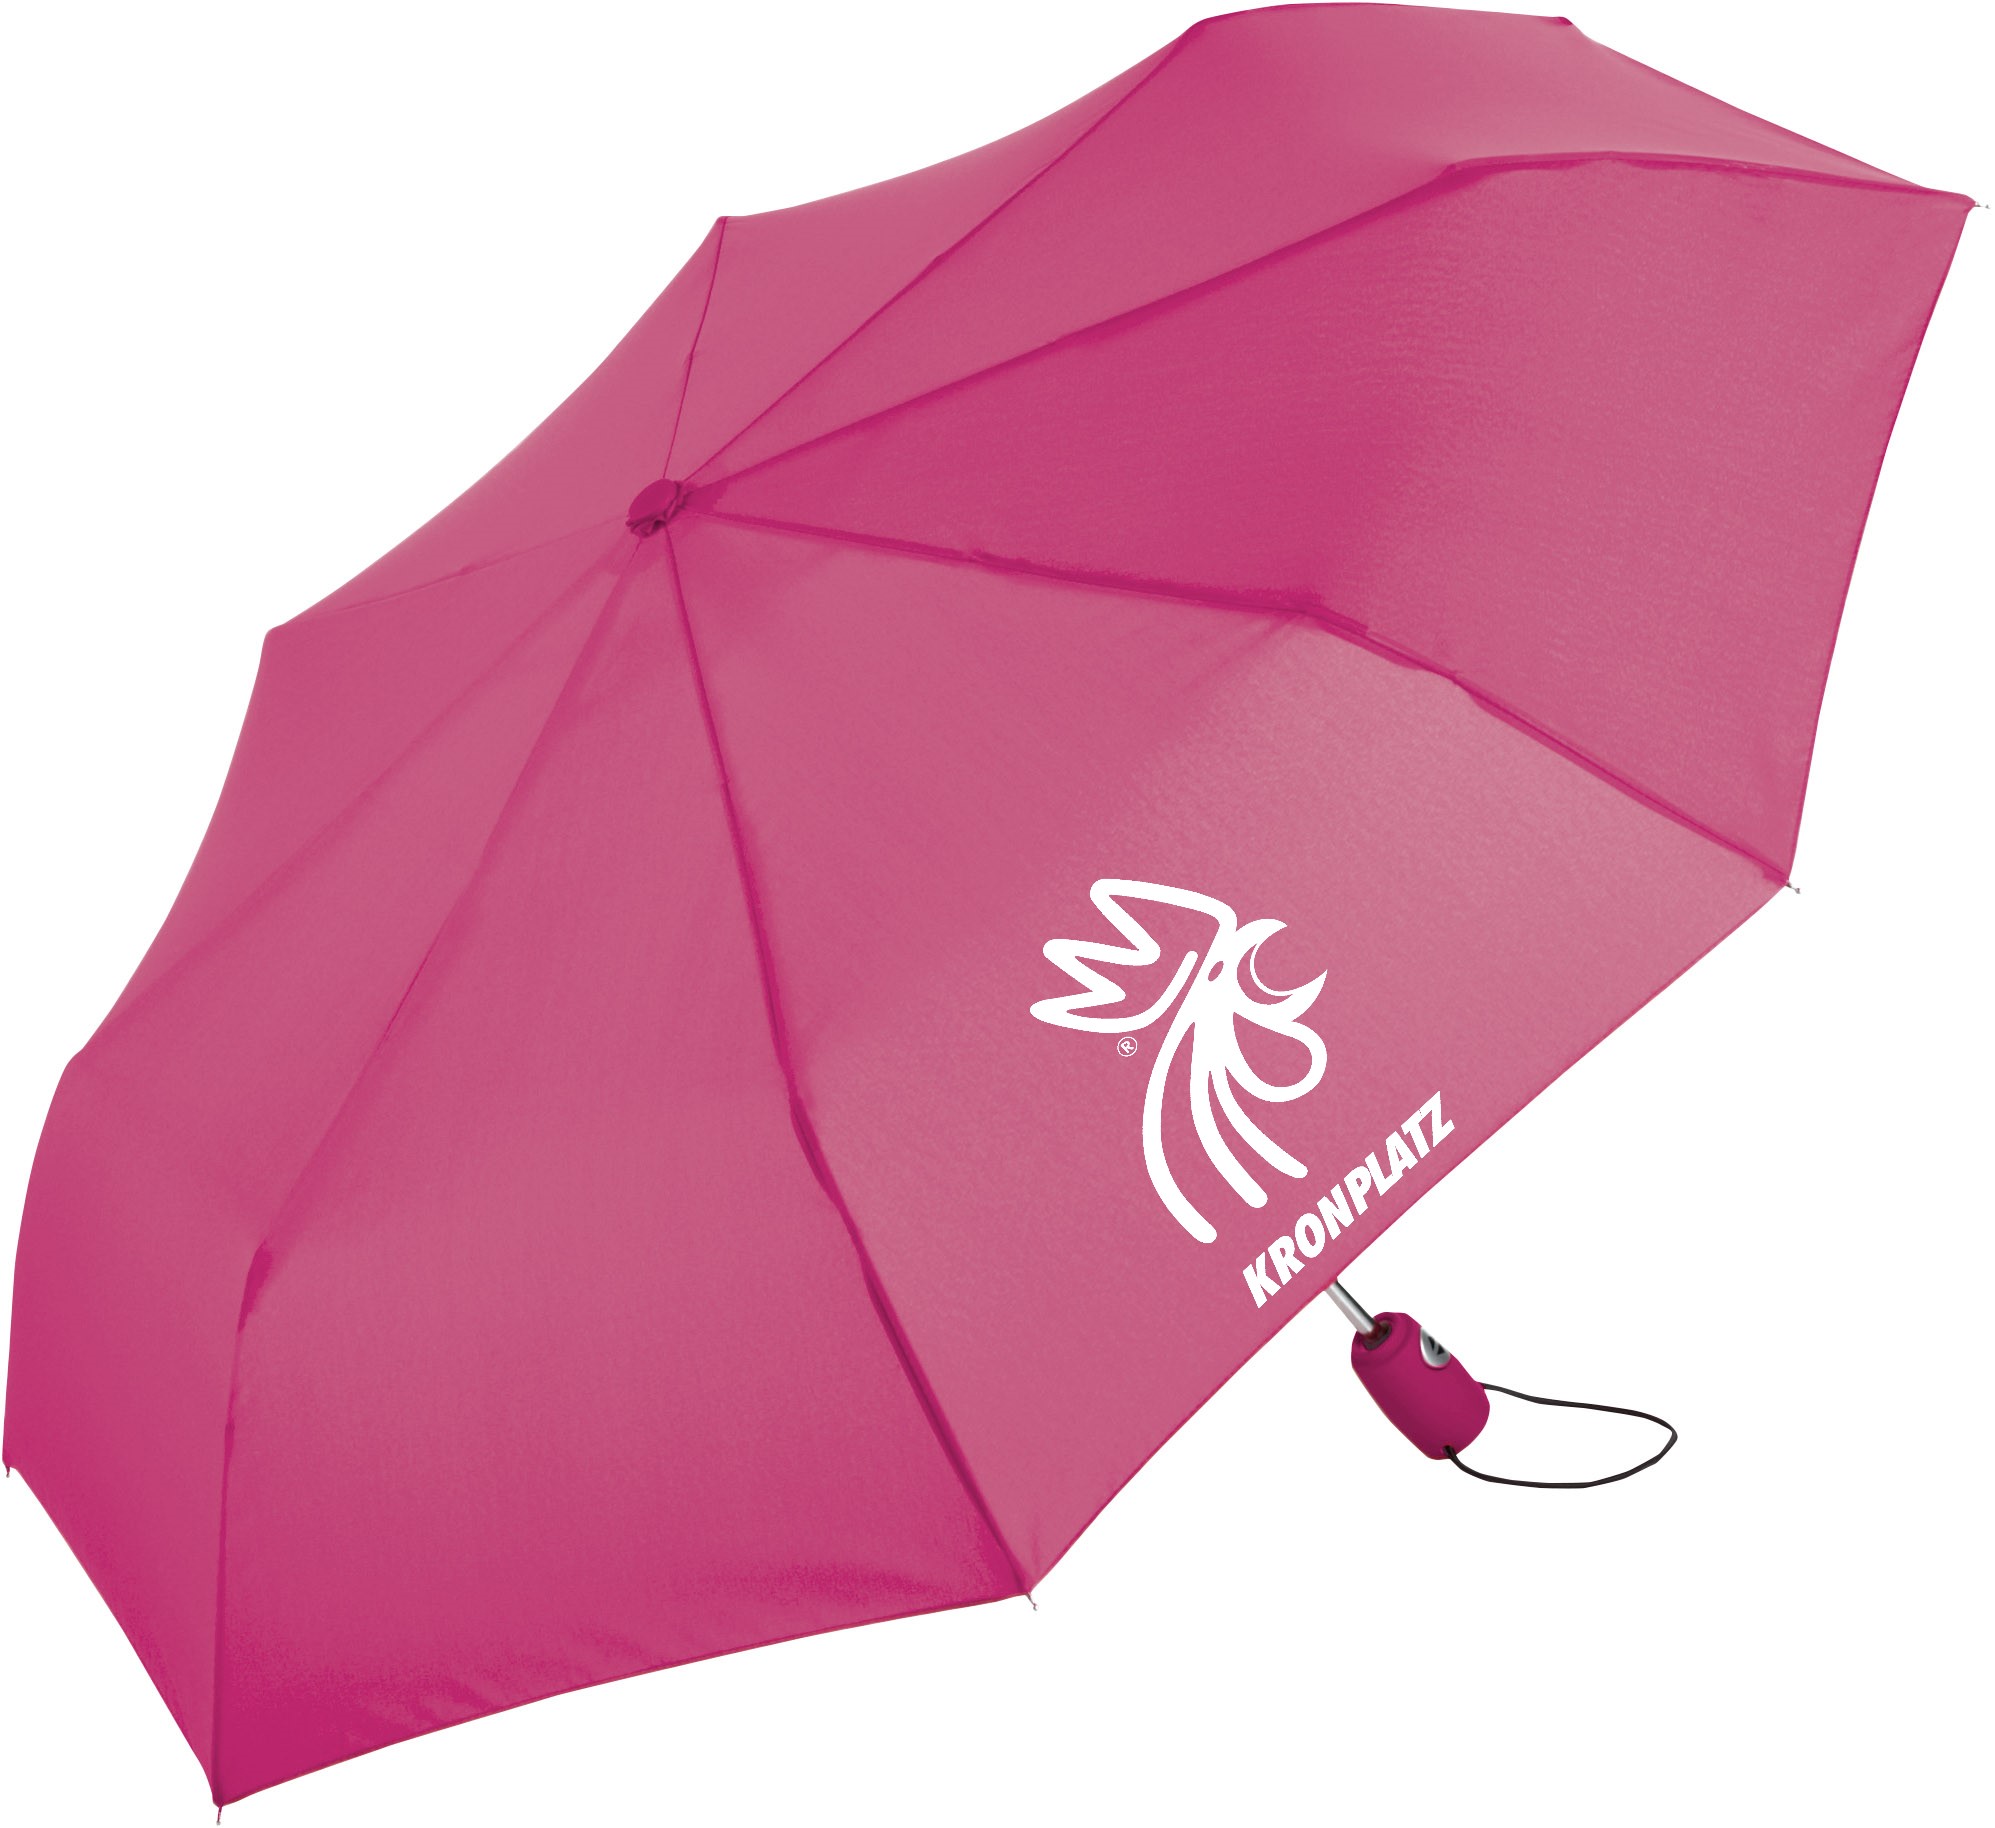 Mini ombrello tascabile Ökobrella Shopping